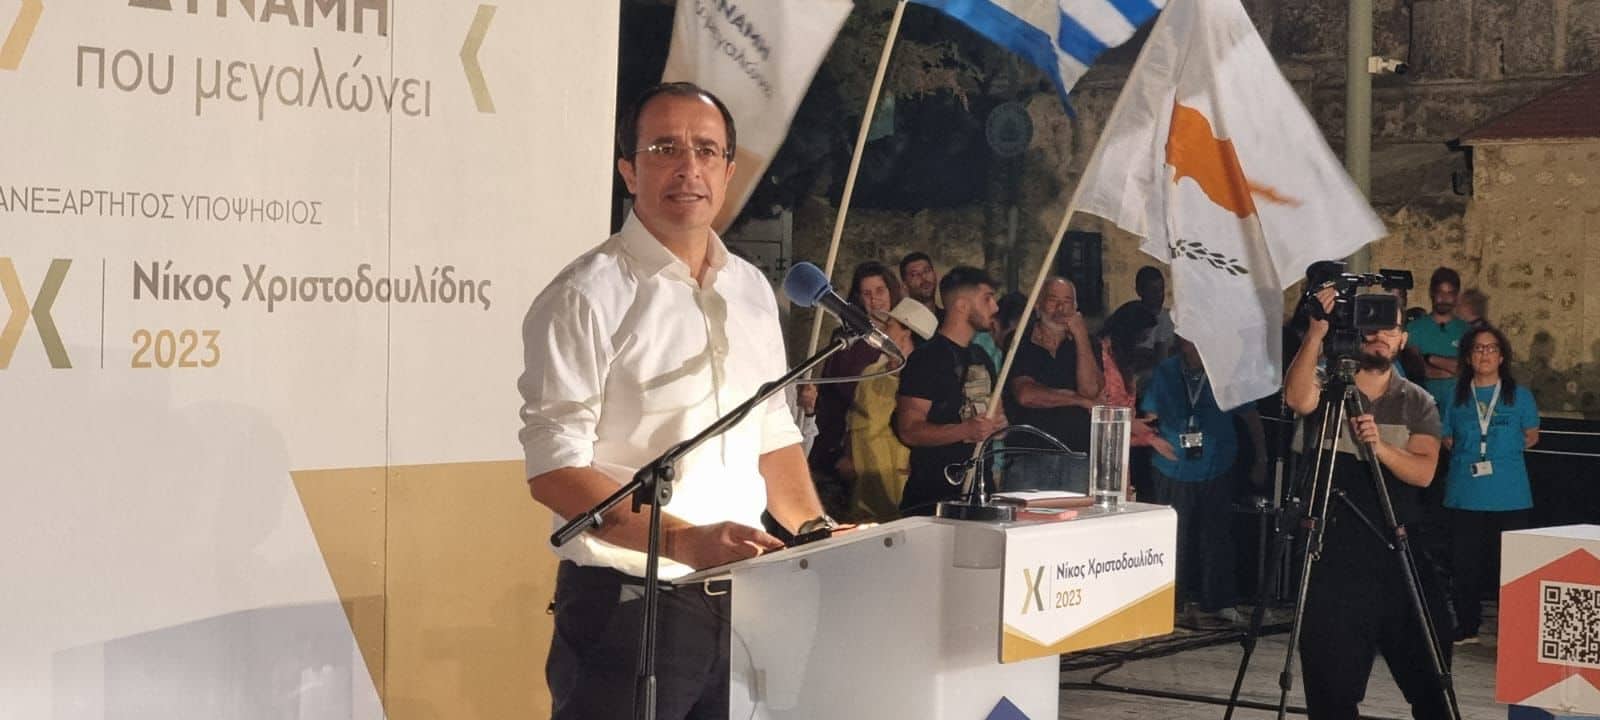 Πανεπαρχιακή Νίκου Χριστοδουλίδη στην Γεροσκήπου: «Ύψιστη προτεραιότητα η λύση του Κυπριακού» (Φωτο)